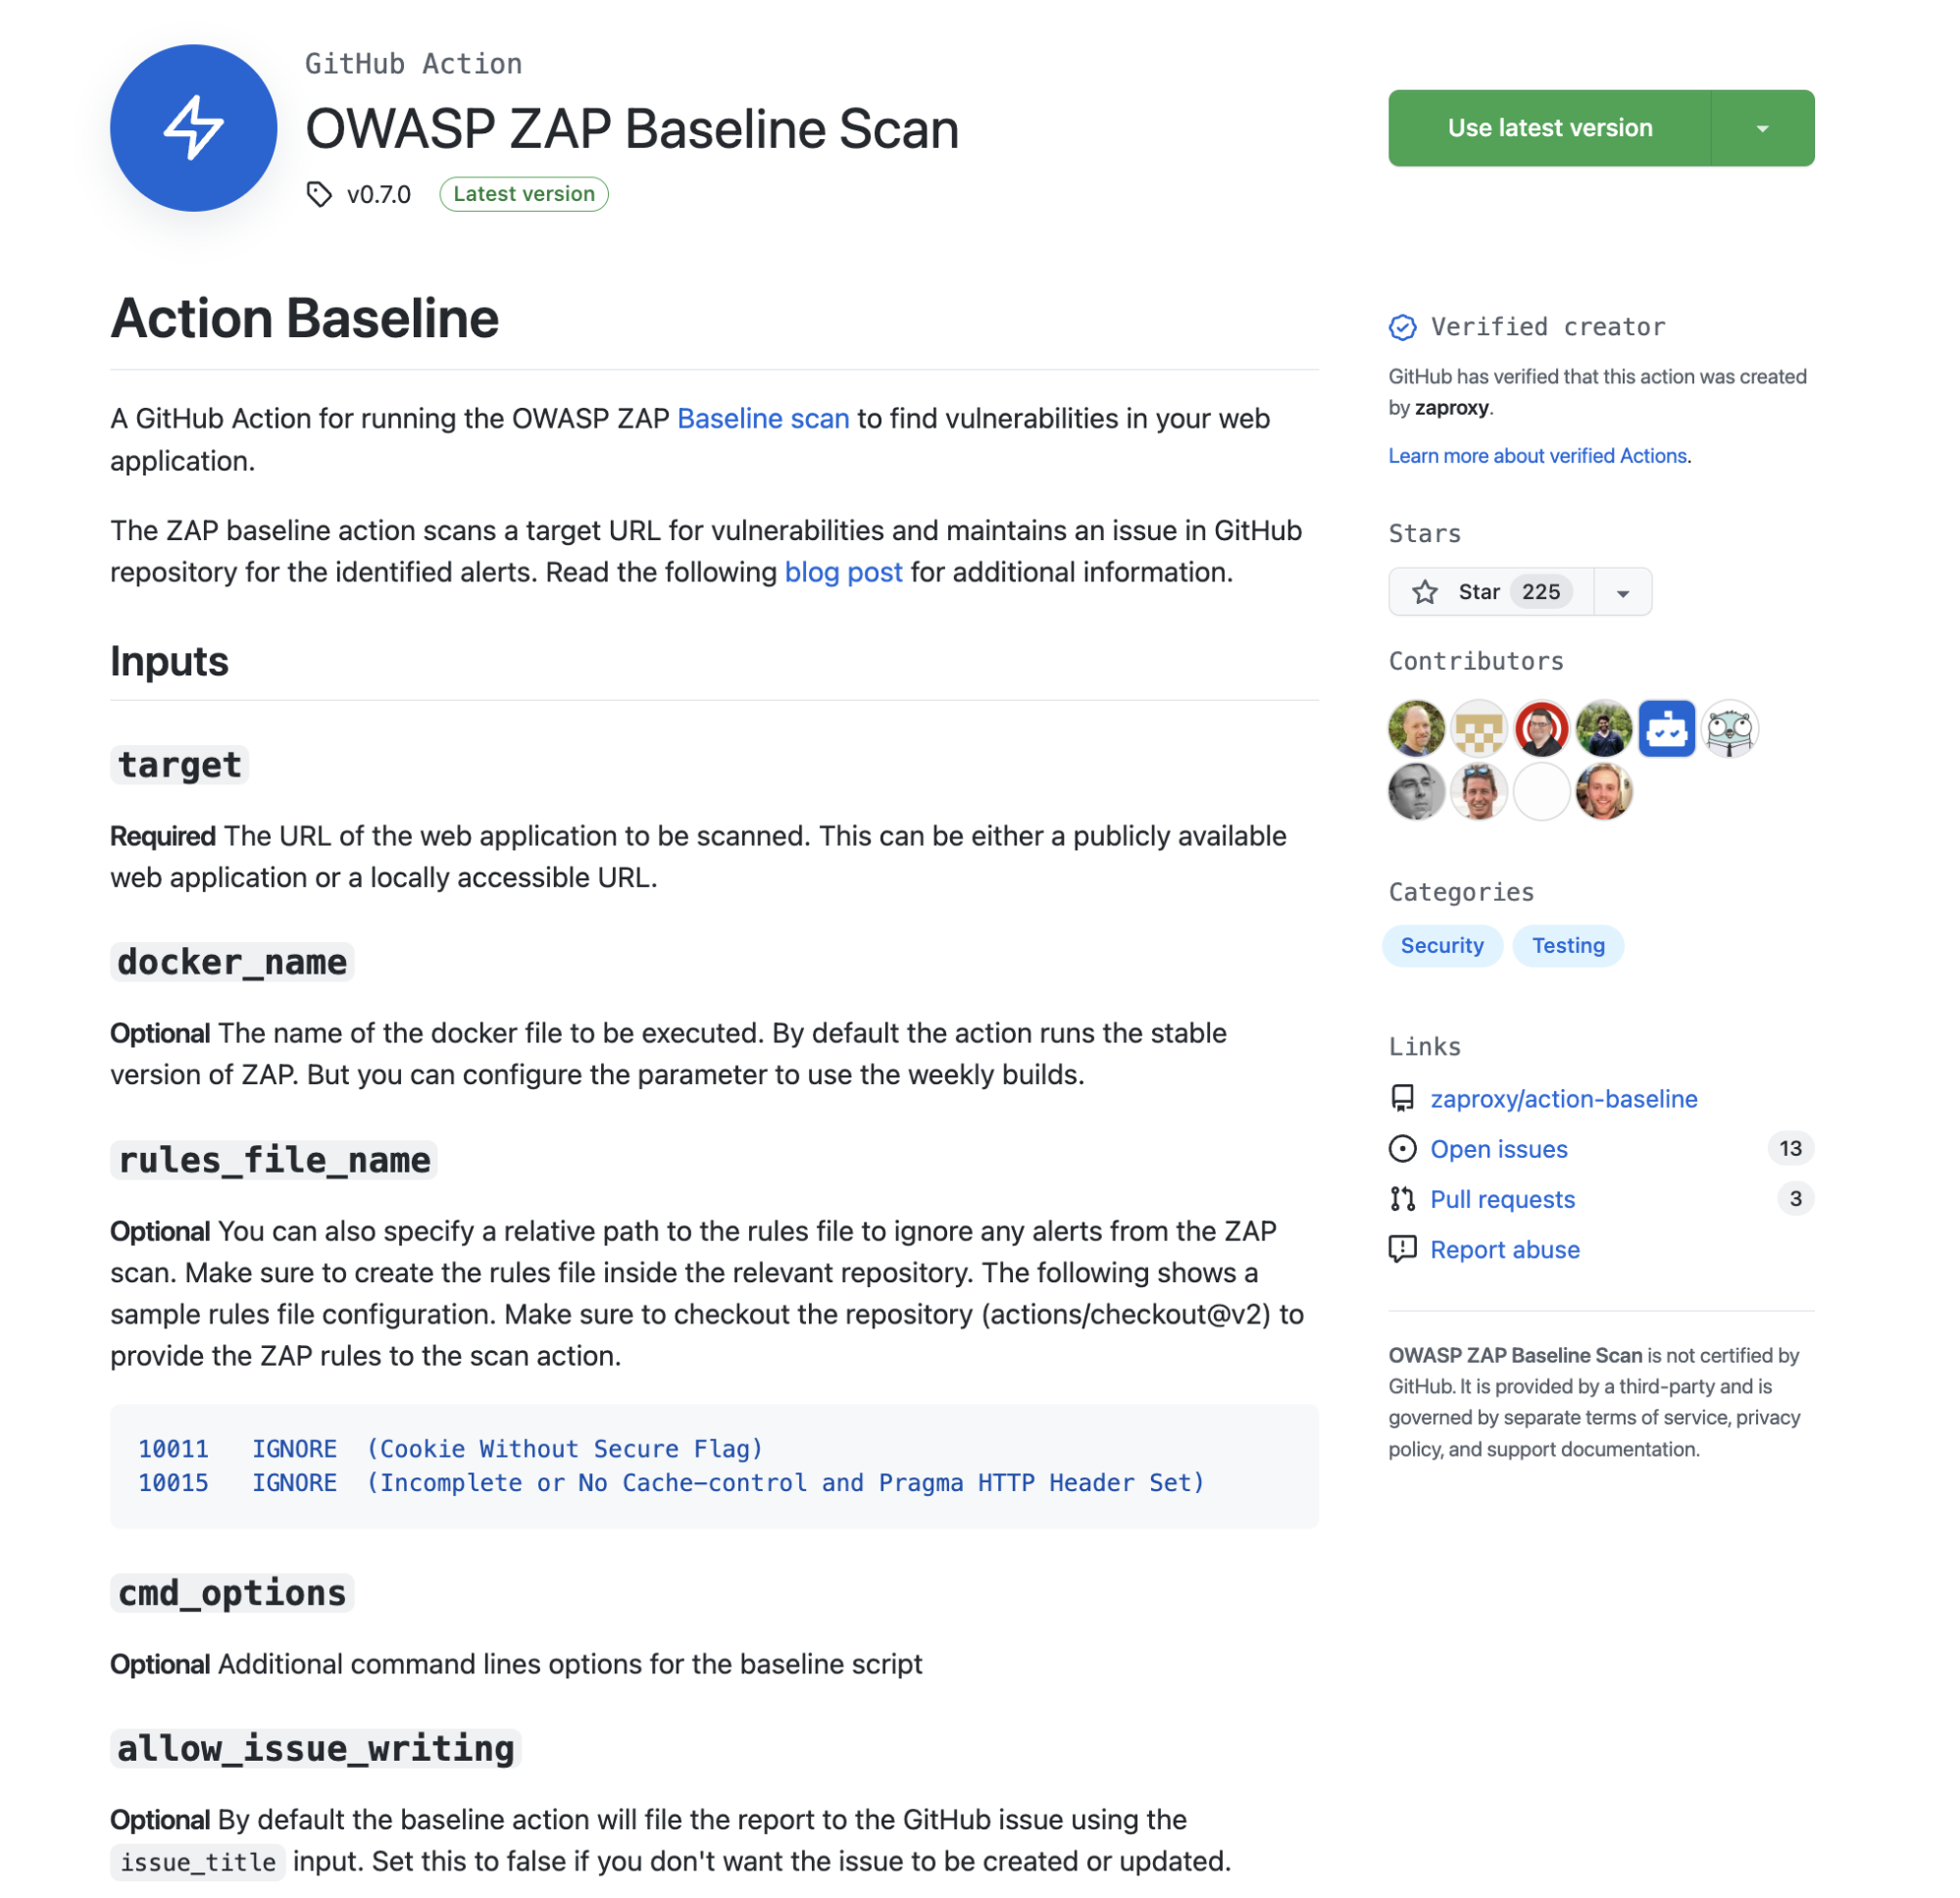 OWASP Zap Baseline Scan GitHub Action